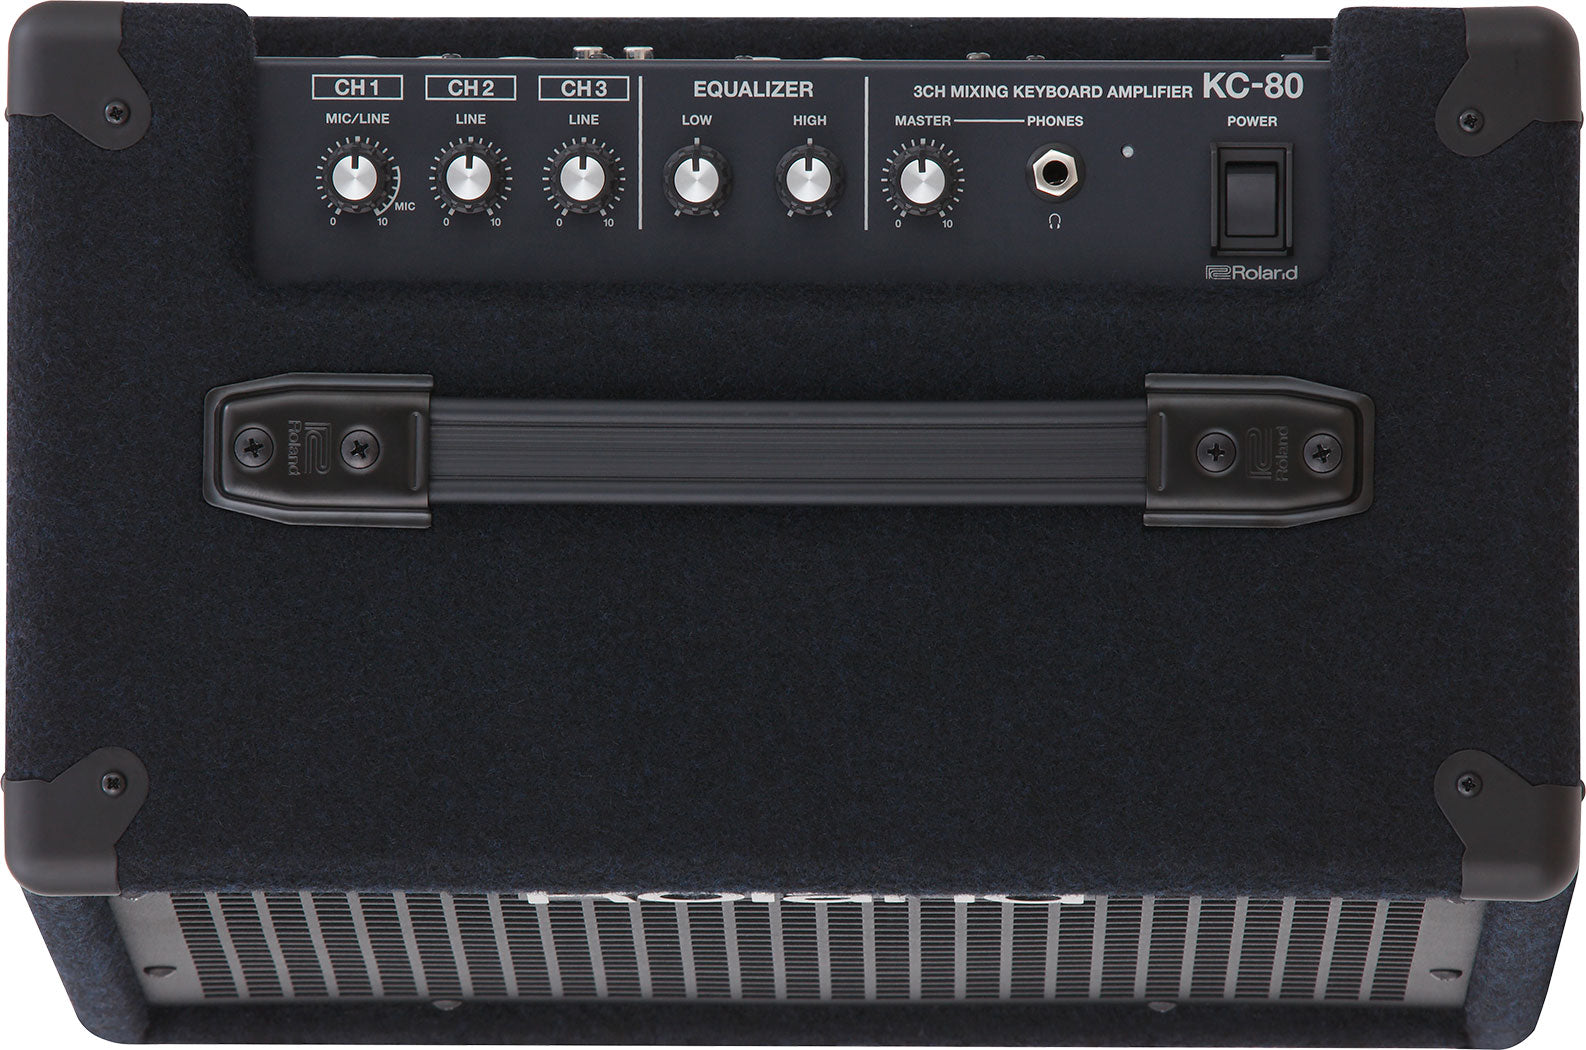 KC-80 Keyboard Amplifier, 50 Watts, 3 Channel Mixer